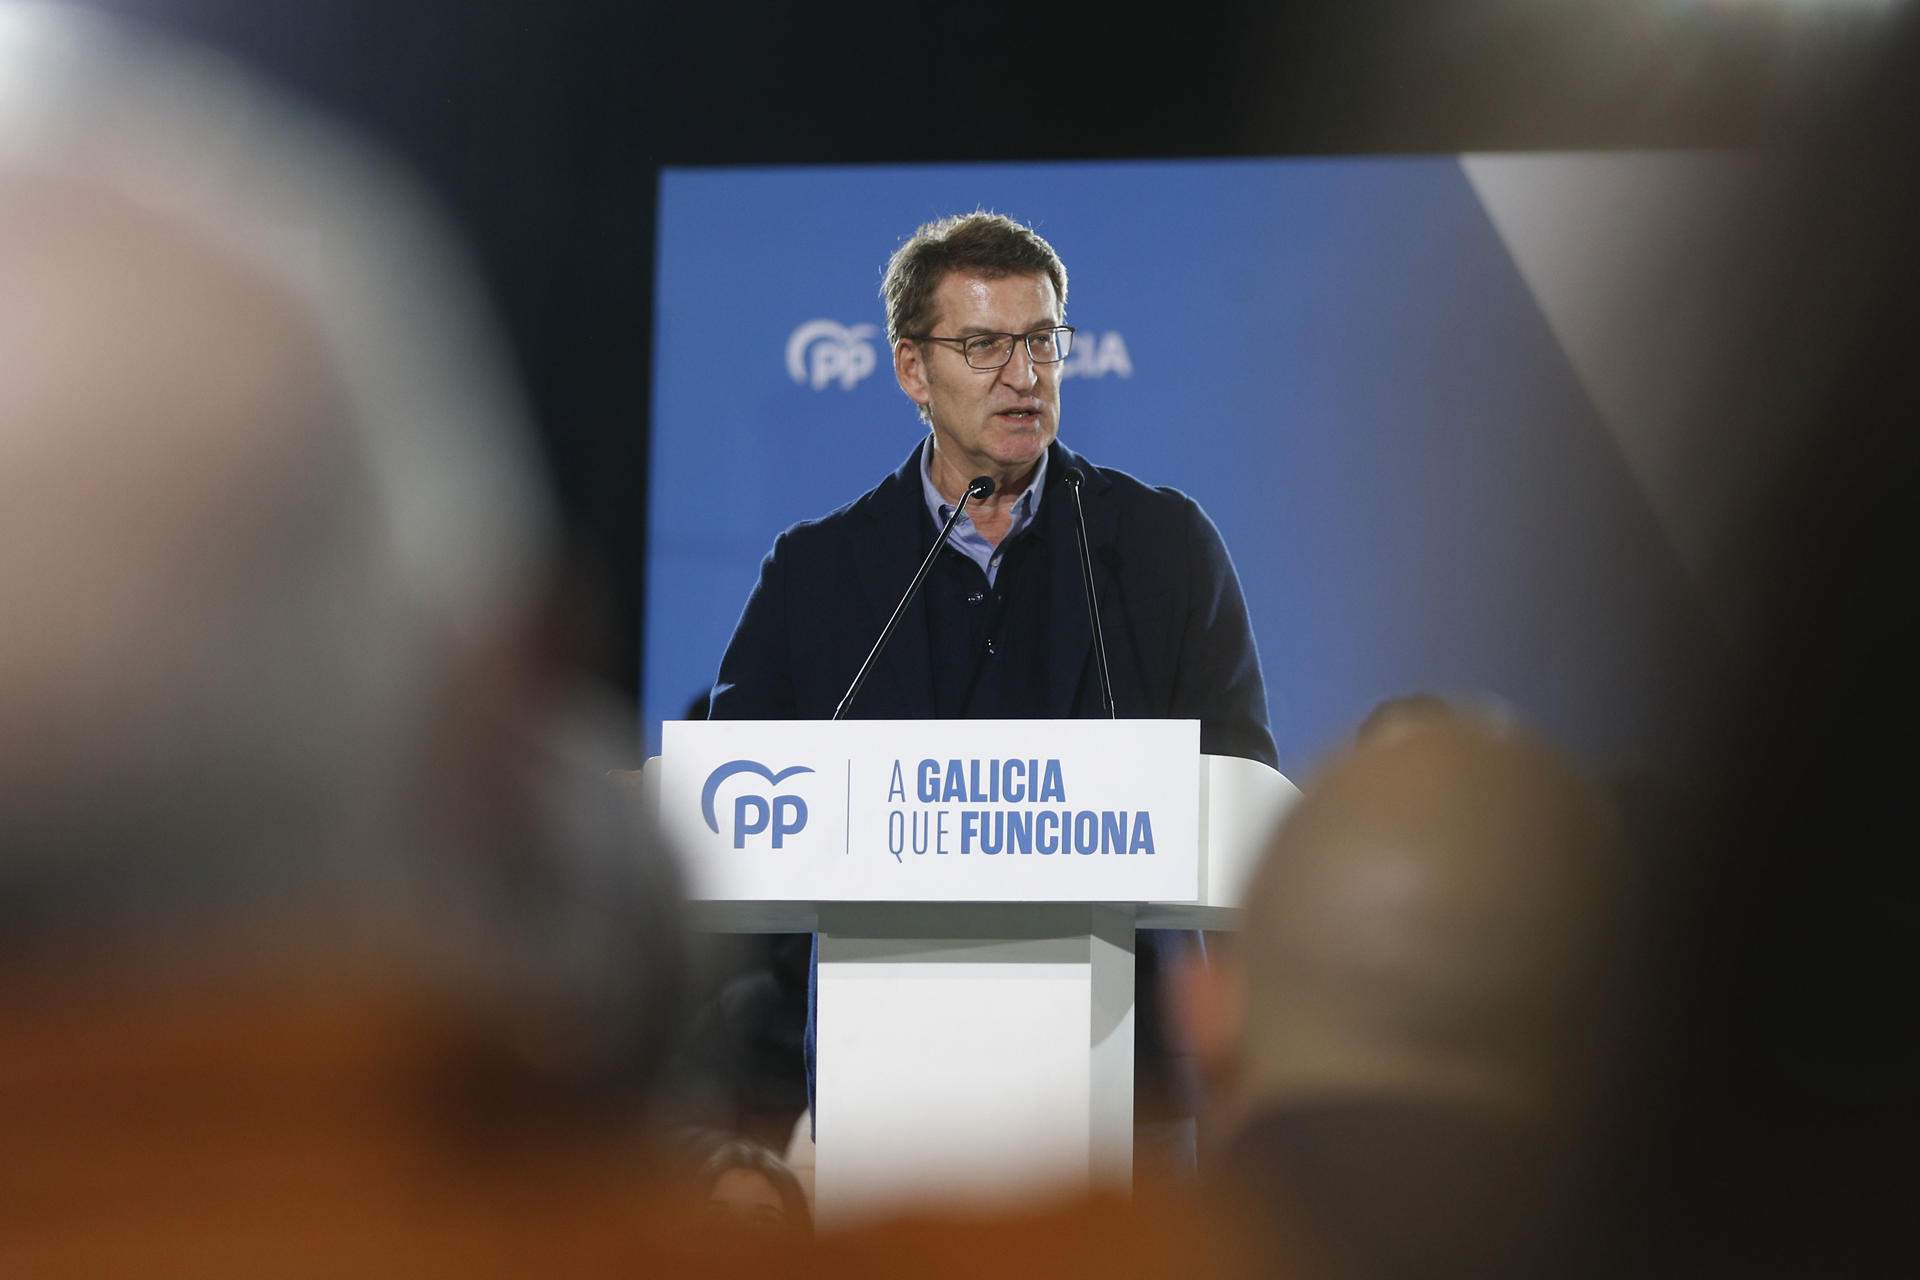 Catalunya y Puigdemont sobrevuelan Galicia: Feijóo da munición a BNG y PSOE para atacar al PP